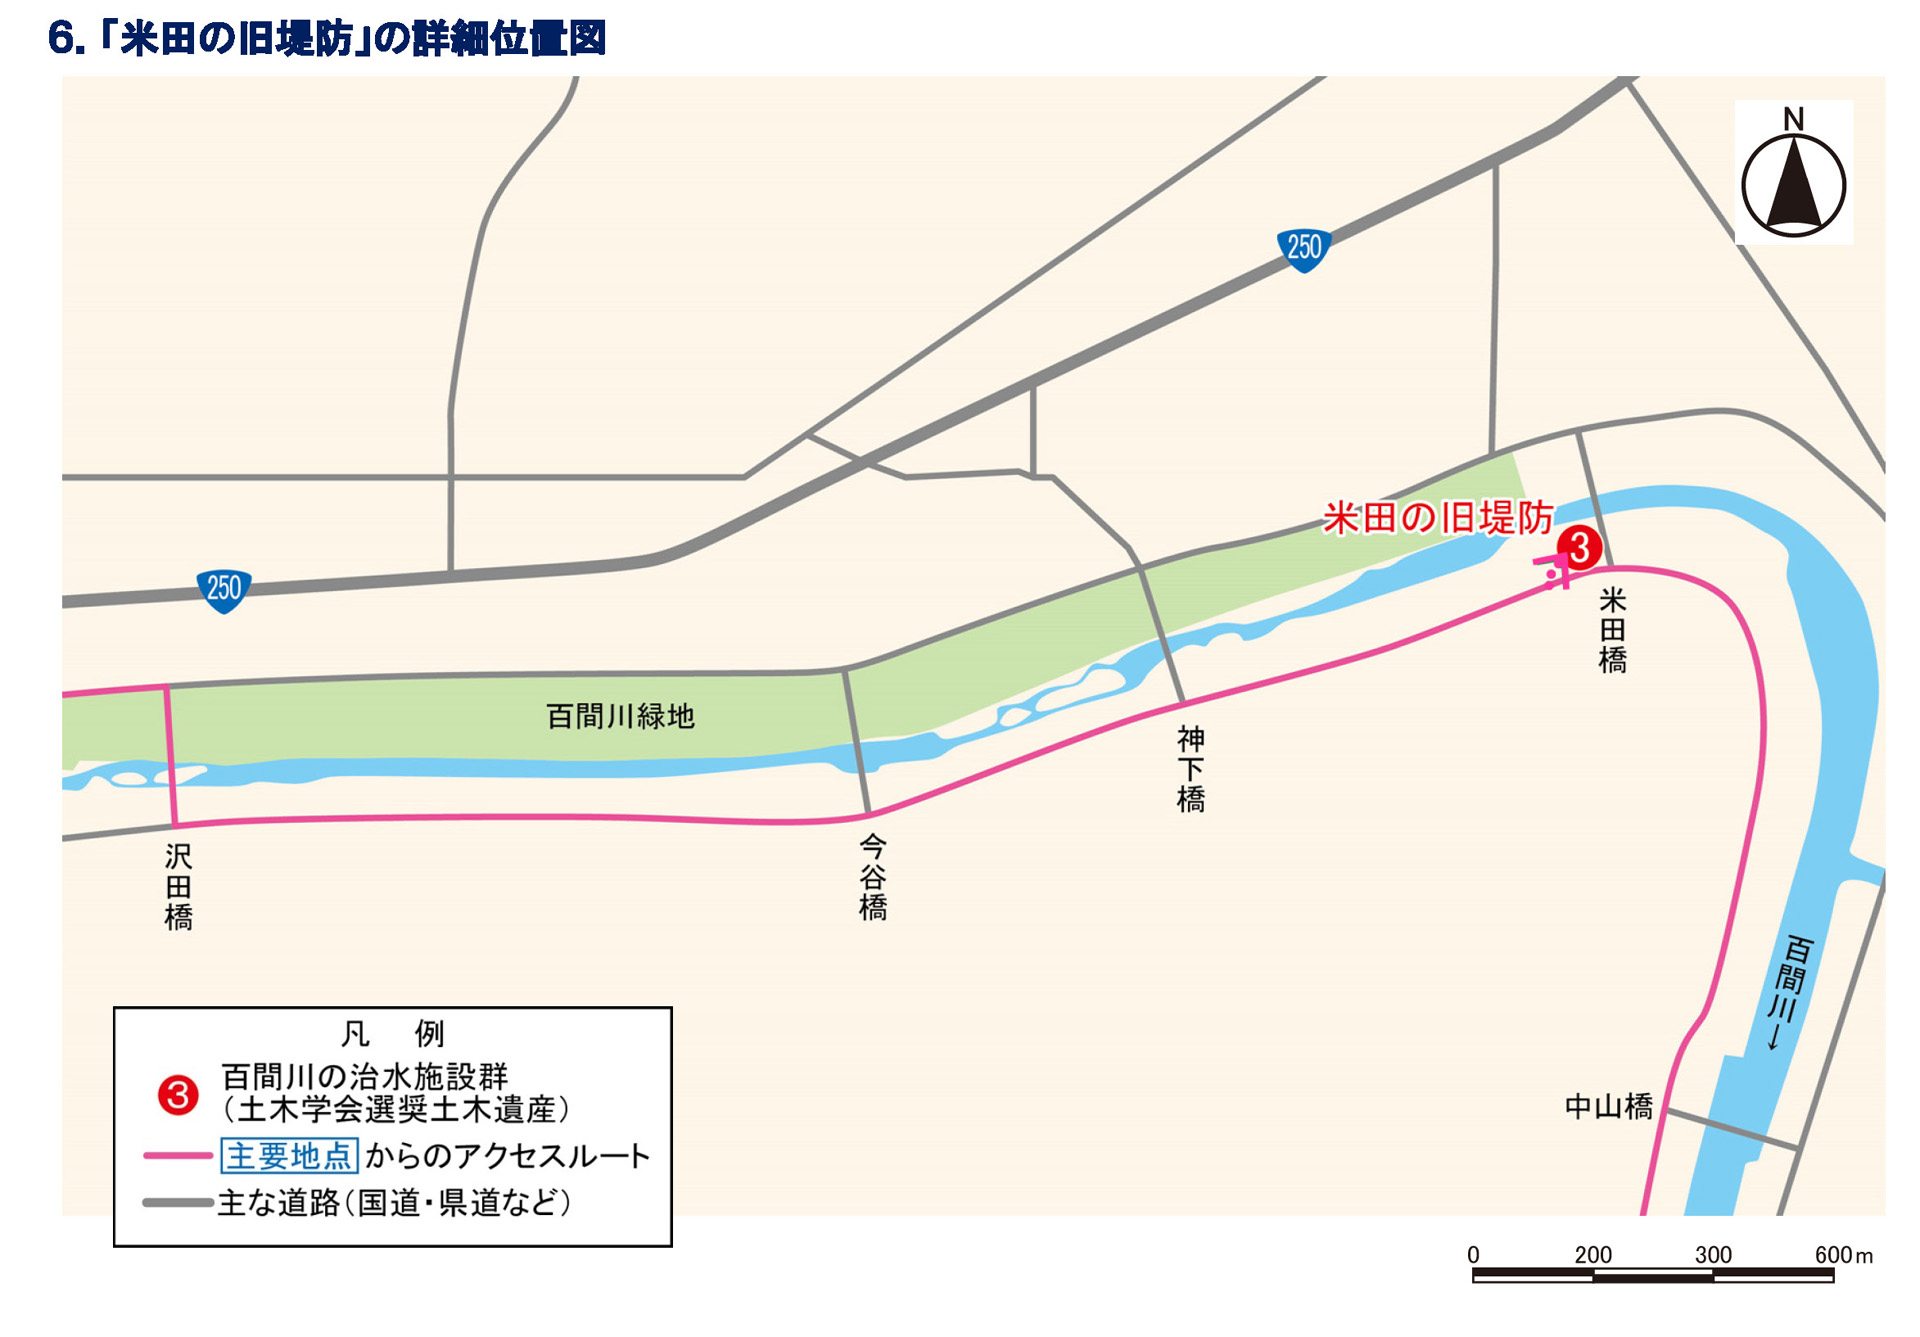 「米田の旧堤防」周辺の詳細位置図